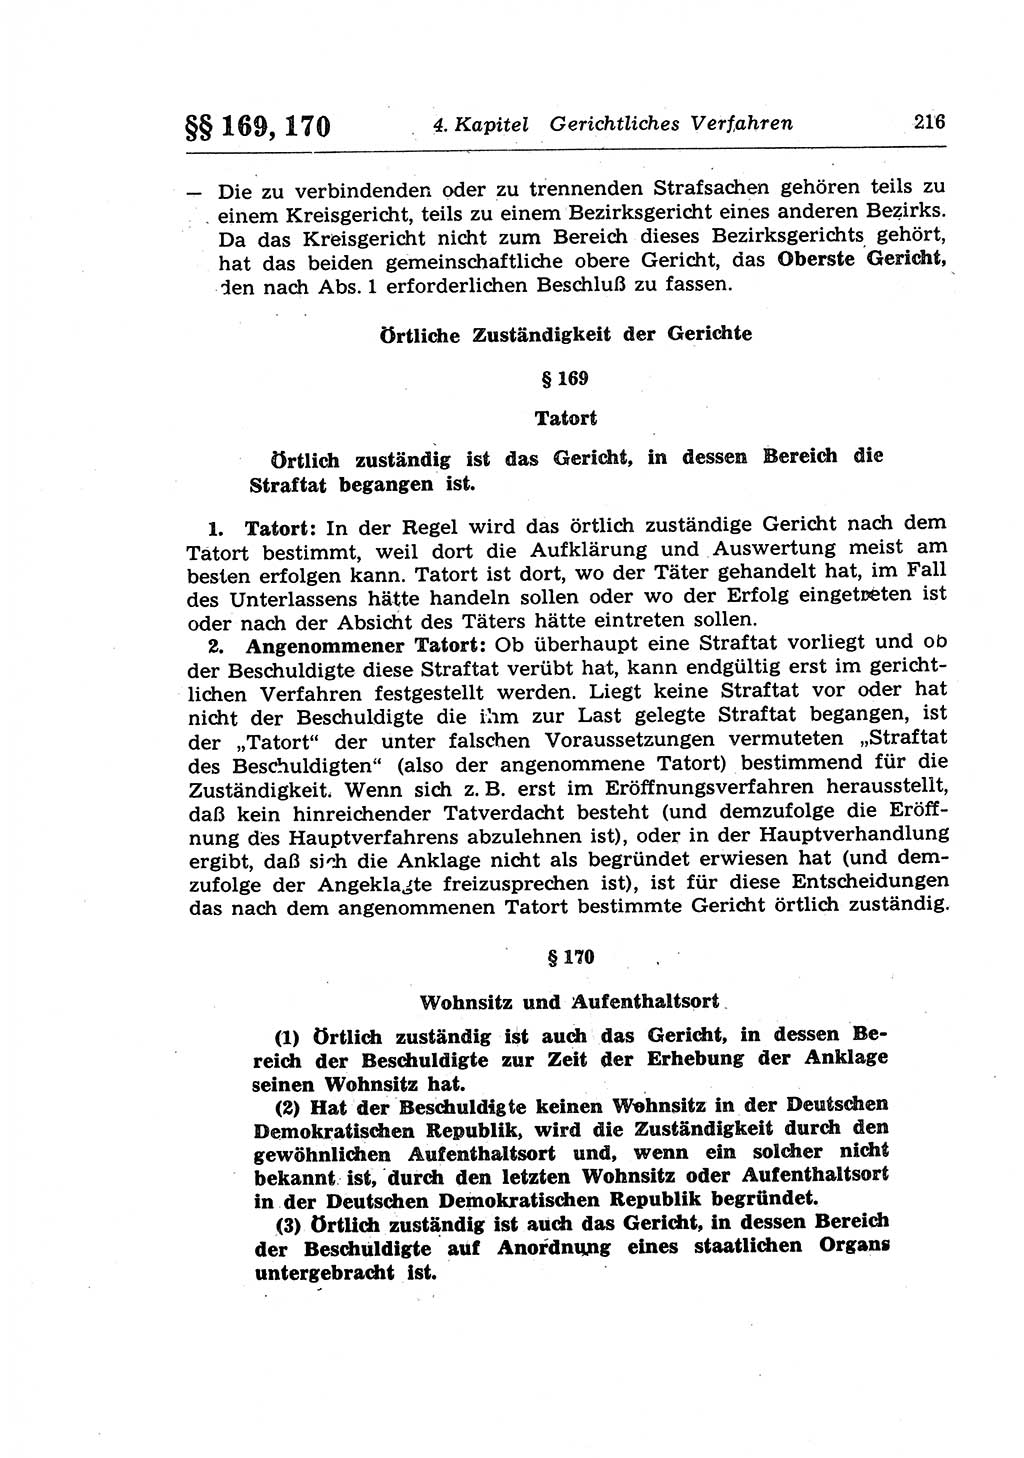 Strafprozeßrecht der DDR (Deutsche Demokratische Republik), Lehrkommentar zur Strafprozeßordnung (StPO) 1968, Seite 216 (Strafprozeßr. DDR Lehrkomm. StPO 19688, S. 216)